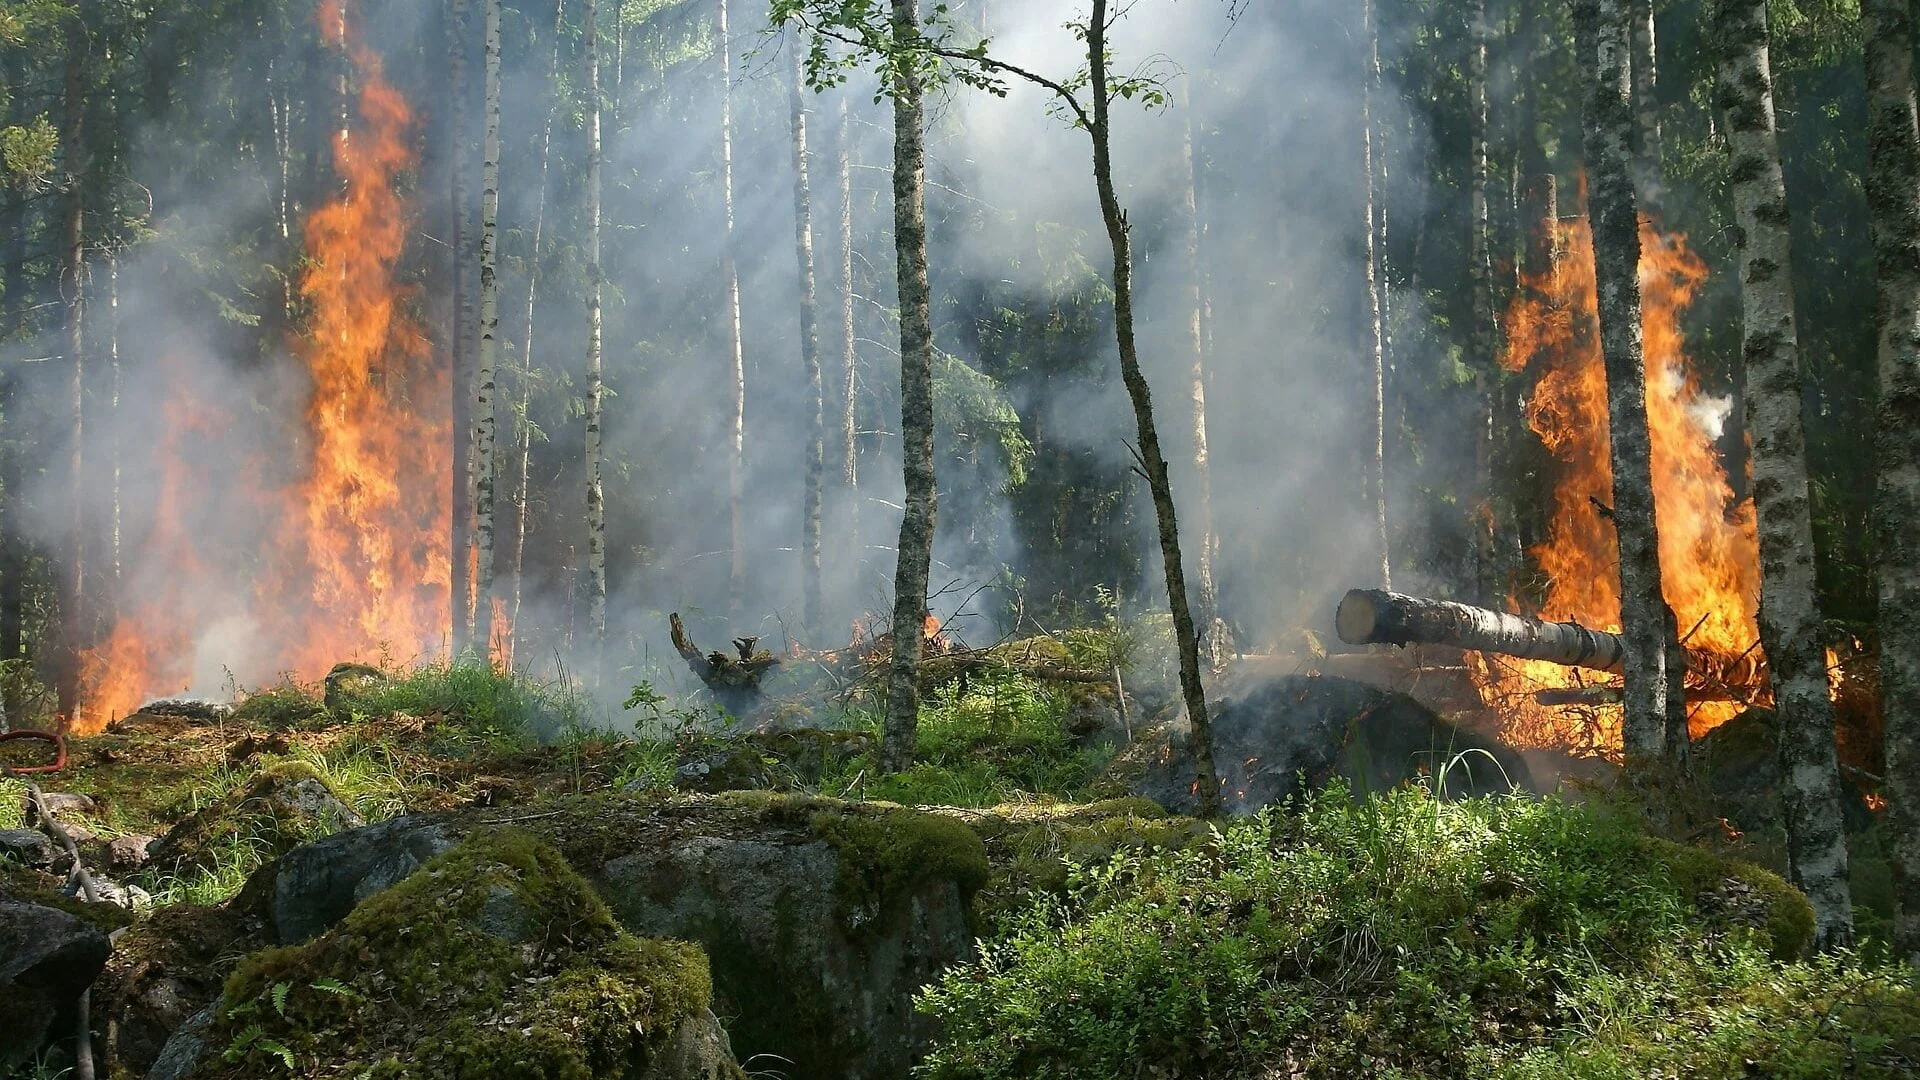 Incendi boschivi - dal 15 giugno periodo di grave pericolosità